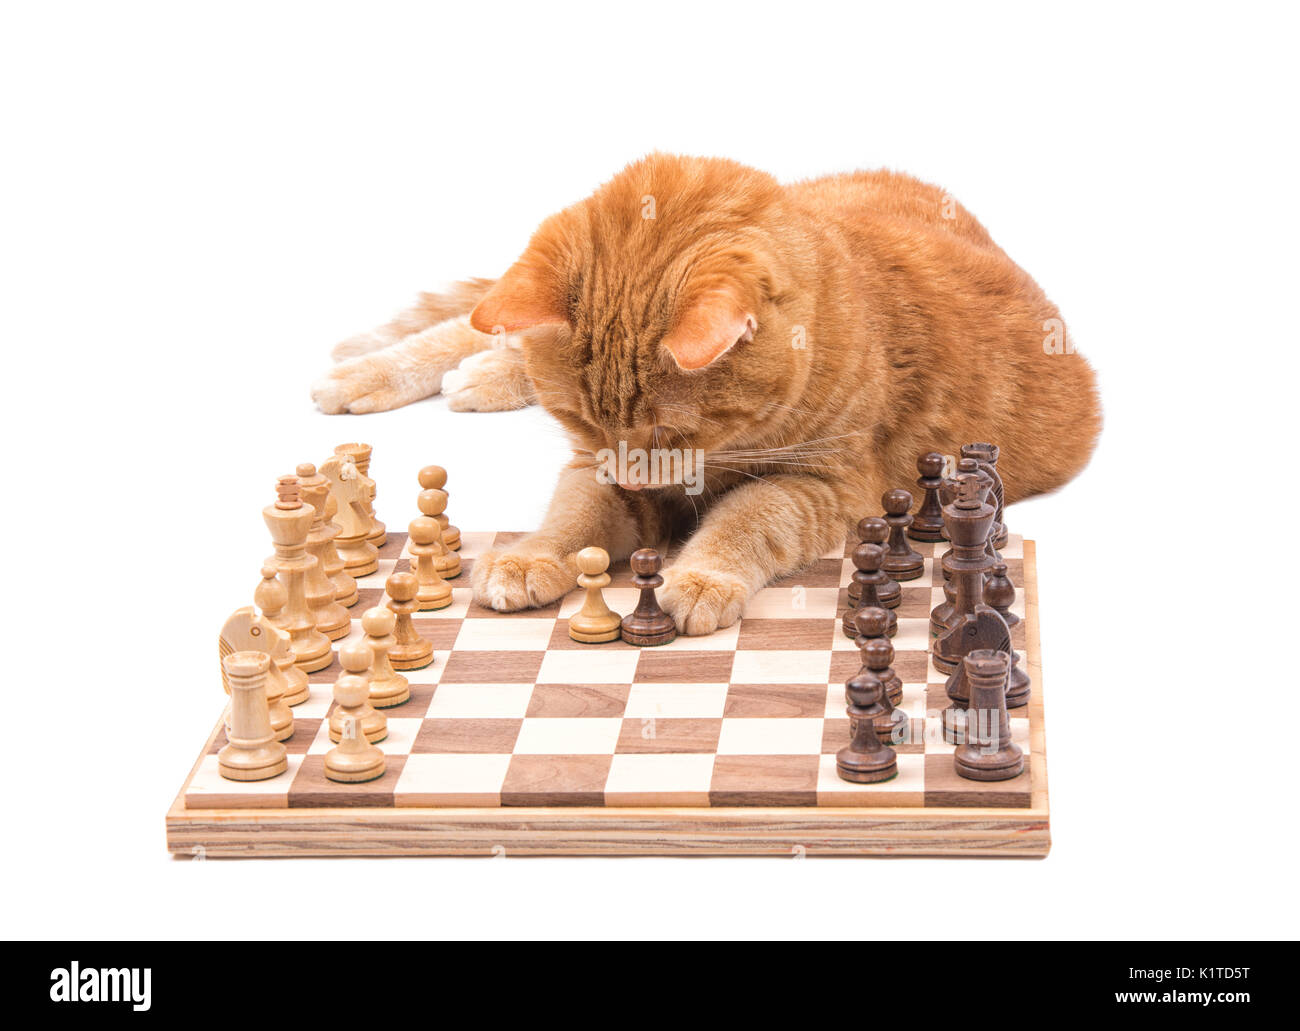 Ginger tabby cat déménagement soigneusement pièces des échecs, isolated on white Banque D'Images